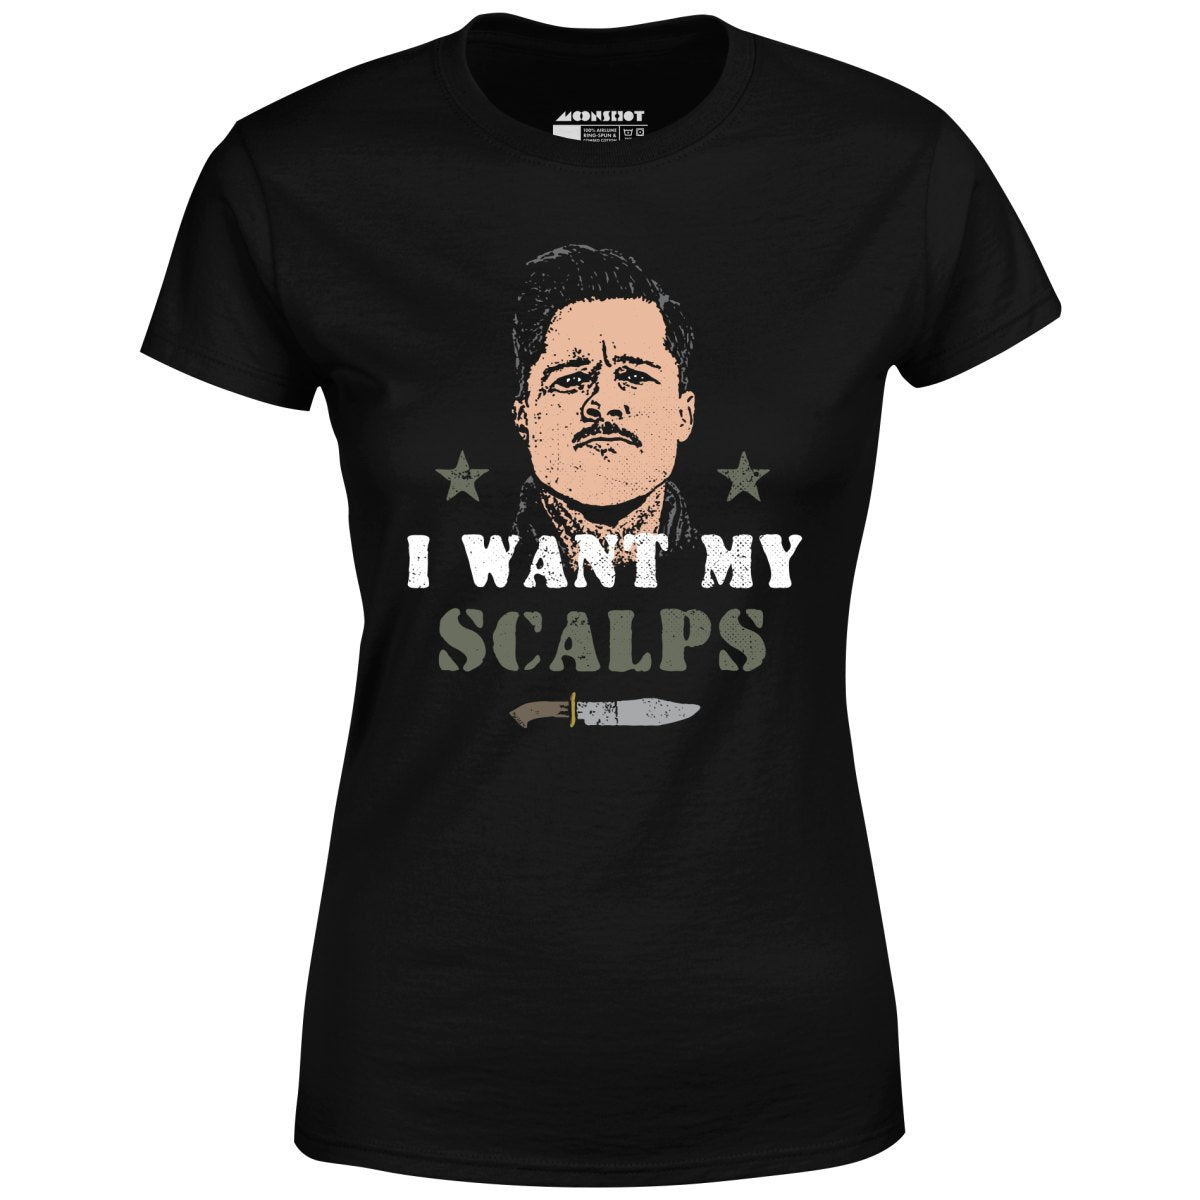 Aldo Raine - I Want My Scalps - Women's T-Shirt